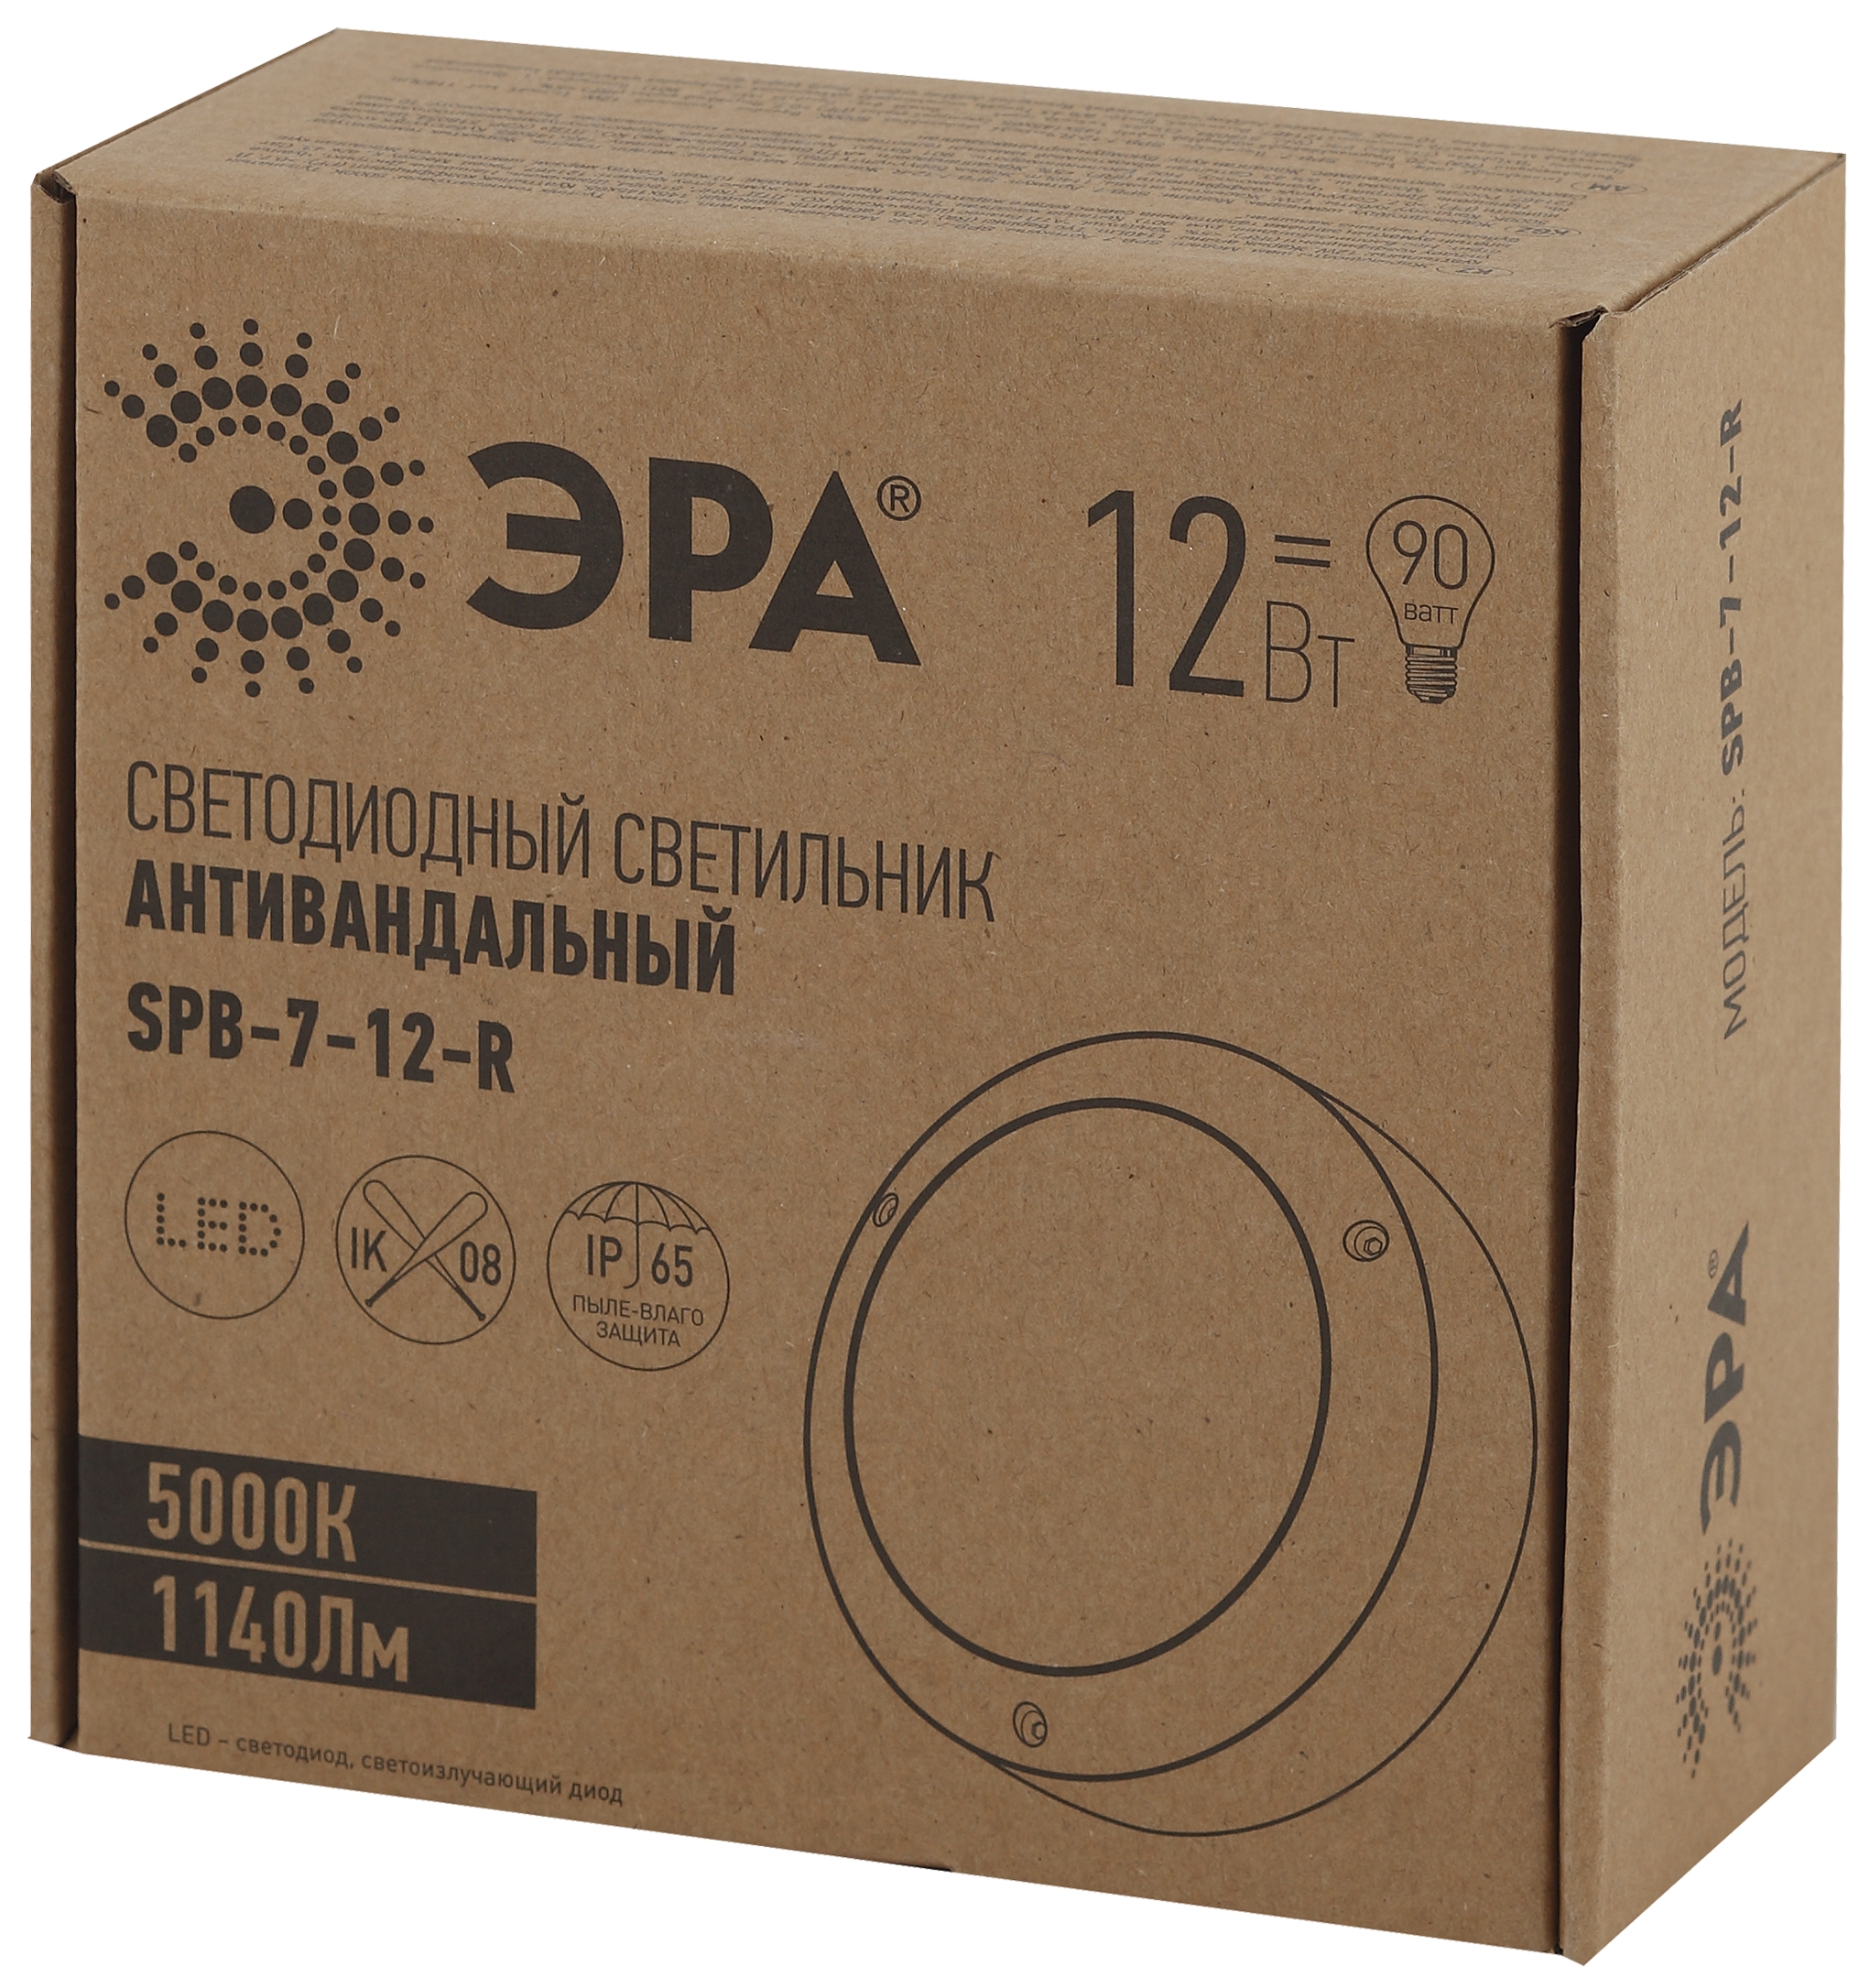 SPB-7-12-R ЭРА Cветильник светодиодный антивандальный IP65 12Вт 1140Лм 5000К D145 КРУГ (24/432)